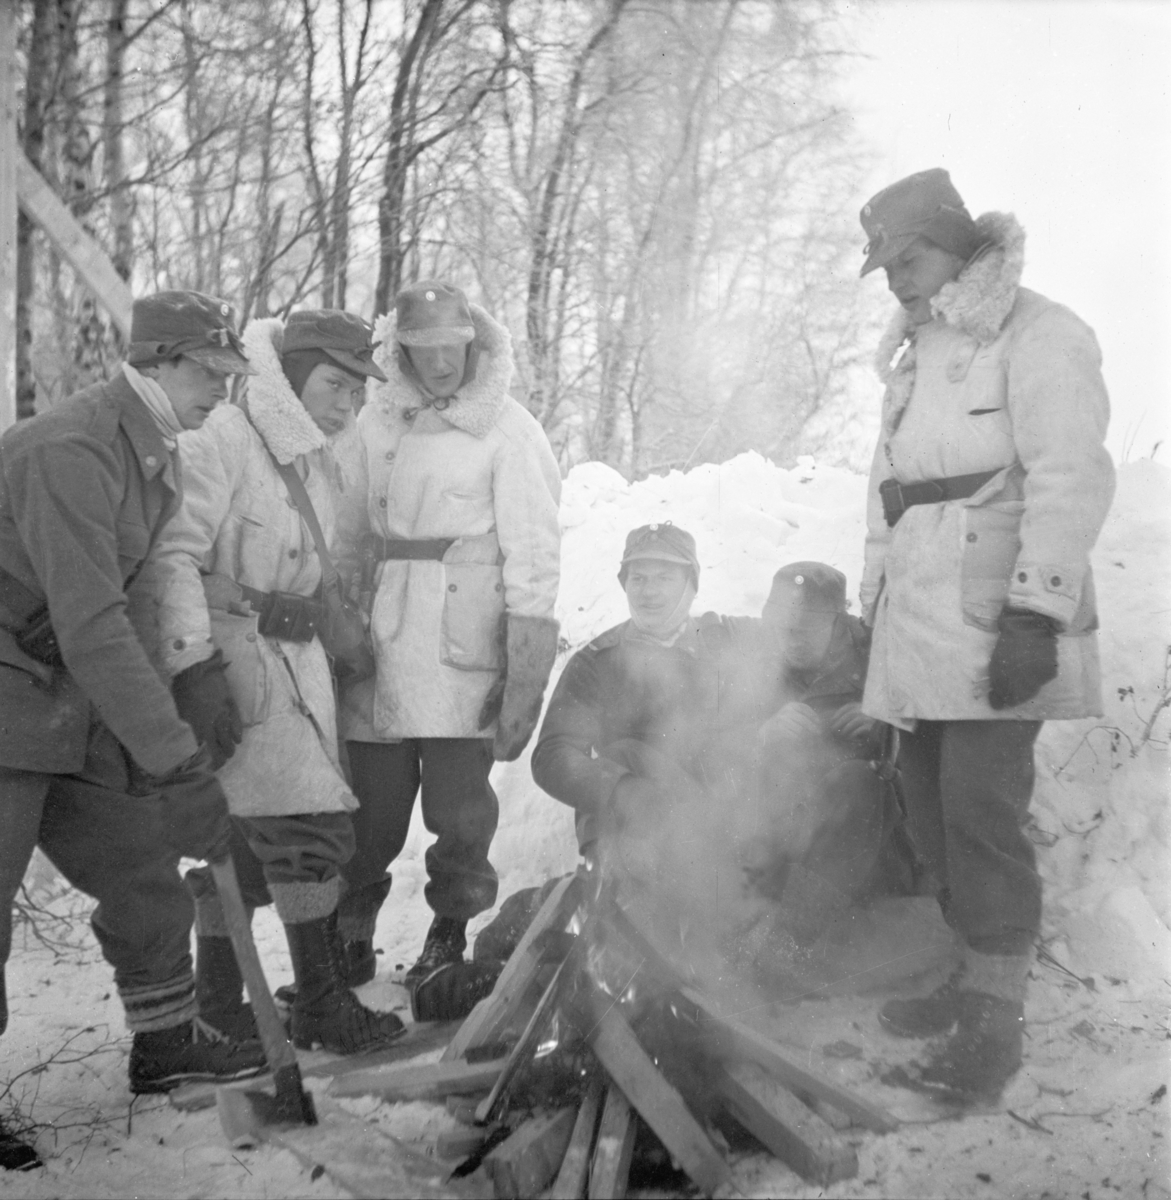 Militärer värmer sig vid brasa vid Svenska frivilligkåren i Finland, F 19. Sex militärer i uniform vid öppen eld i terräng.